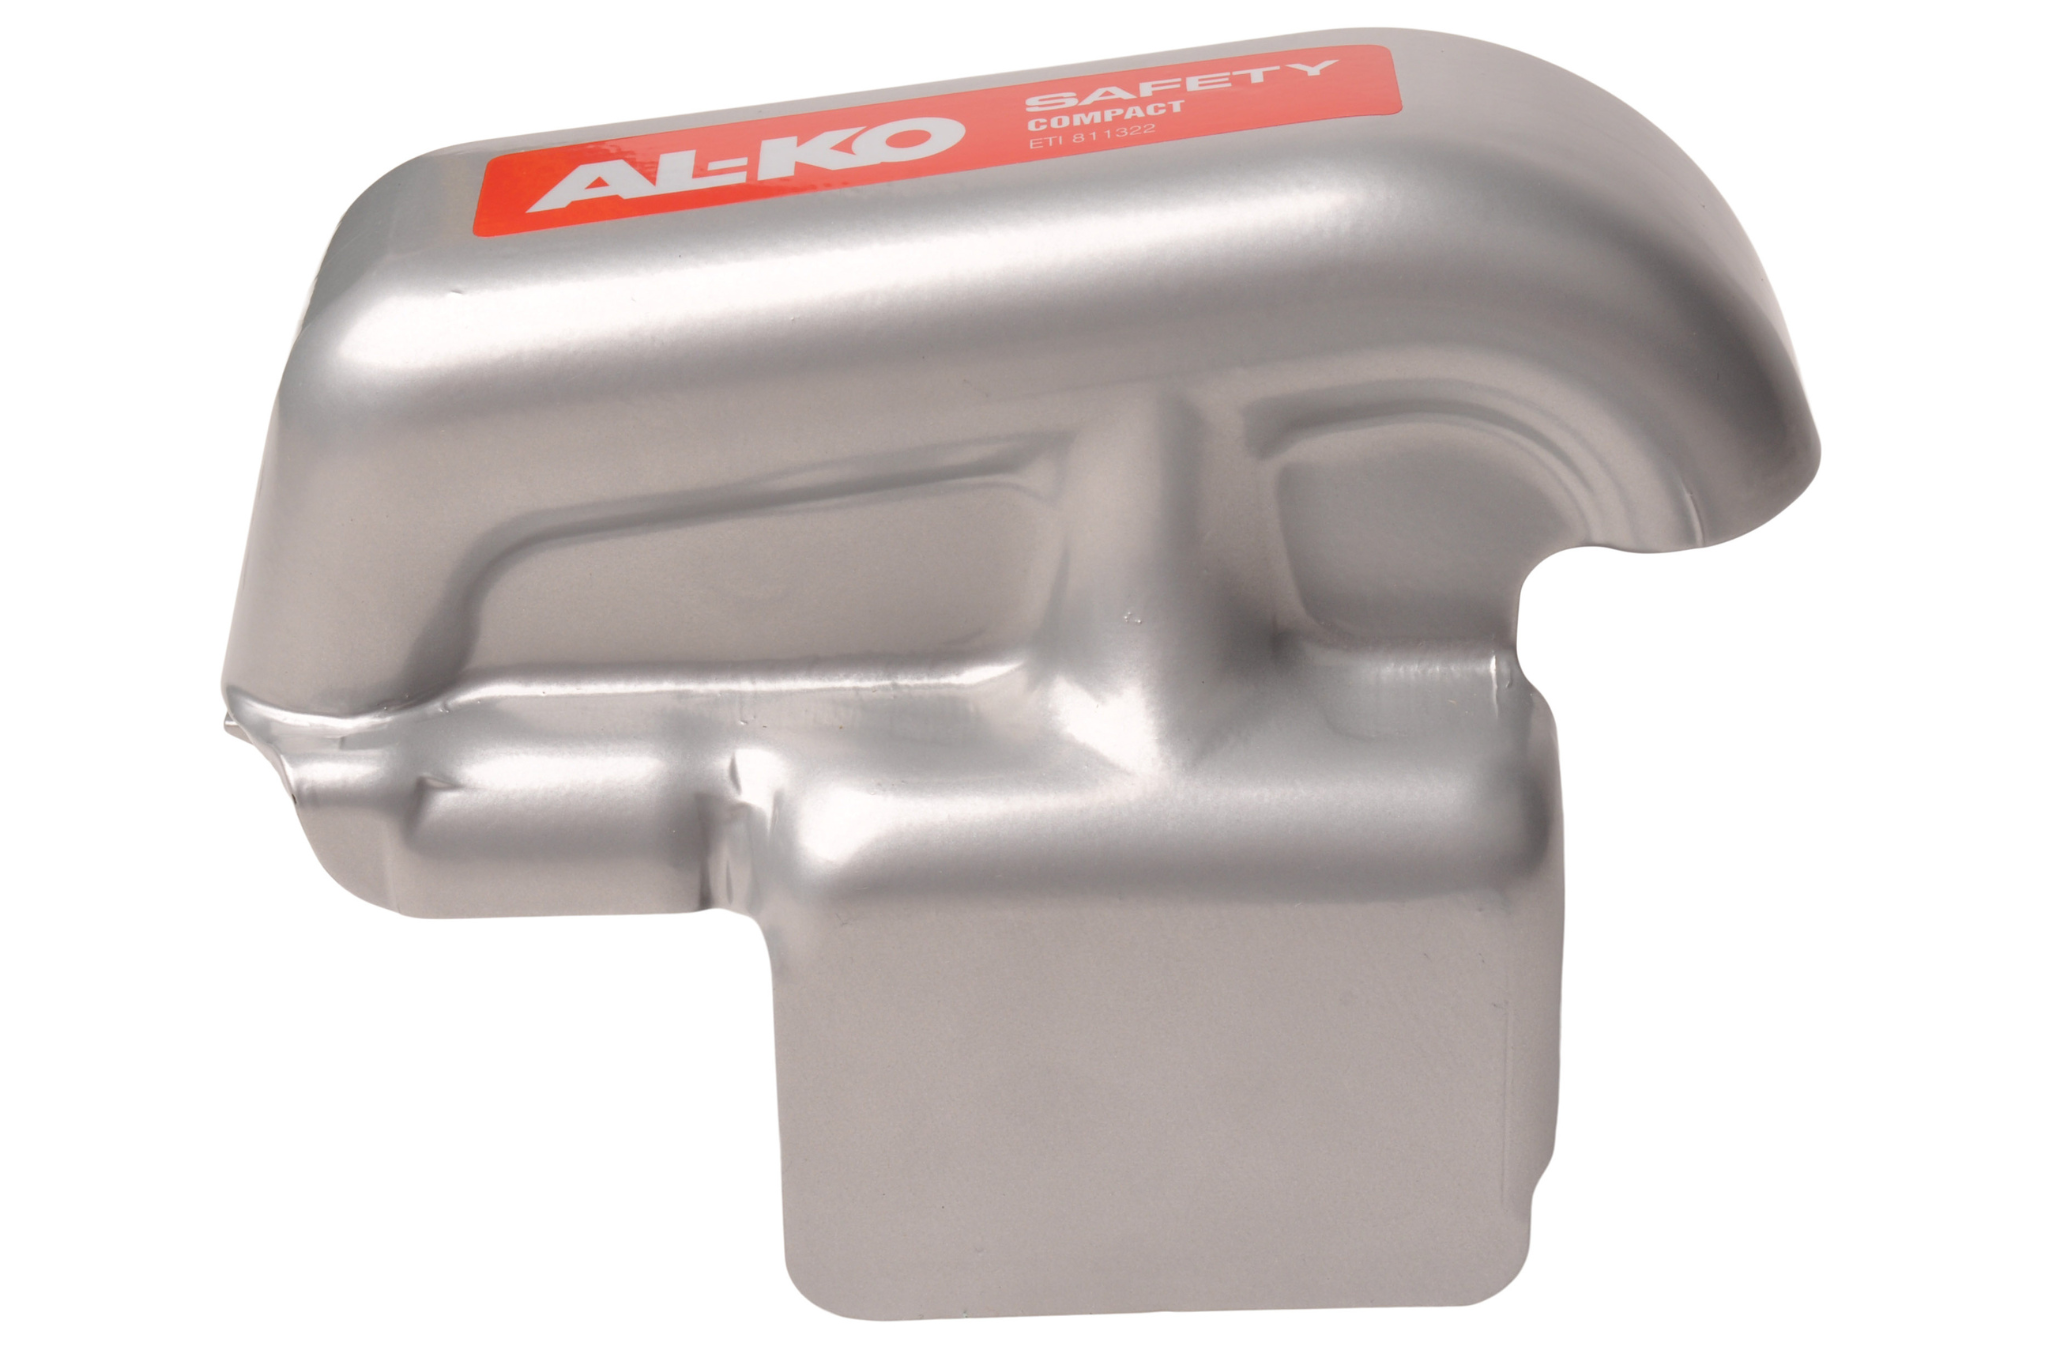 Anti-vol AL-KO Safety Compact pour les attelages AL-KO AK 160